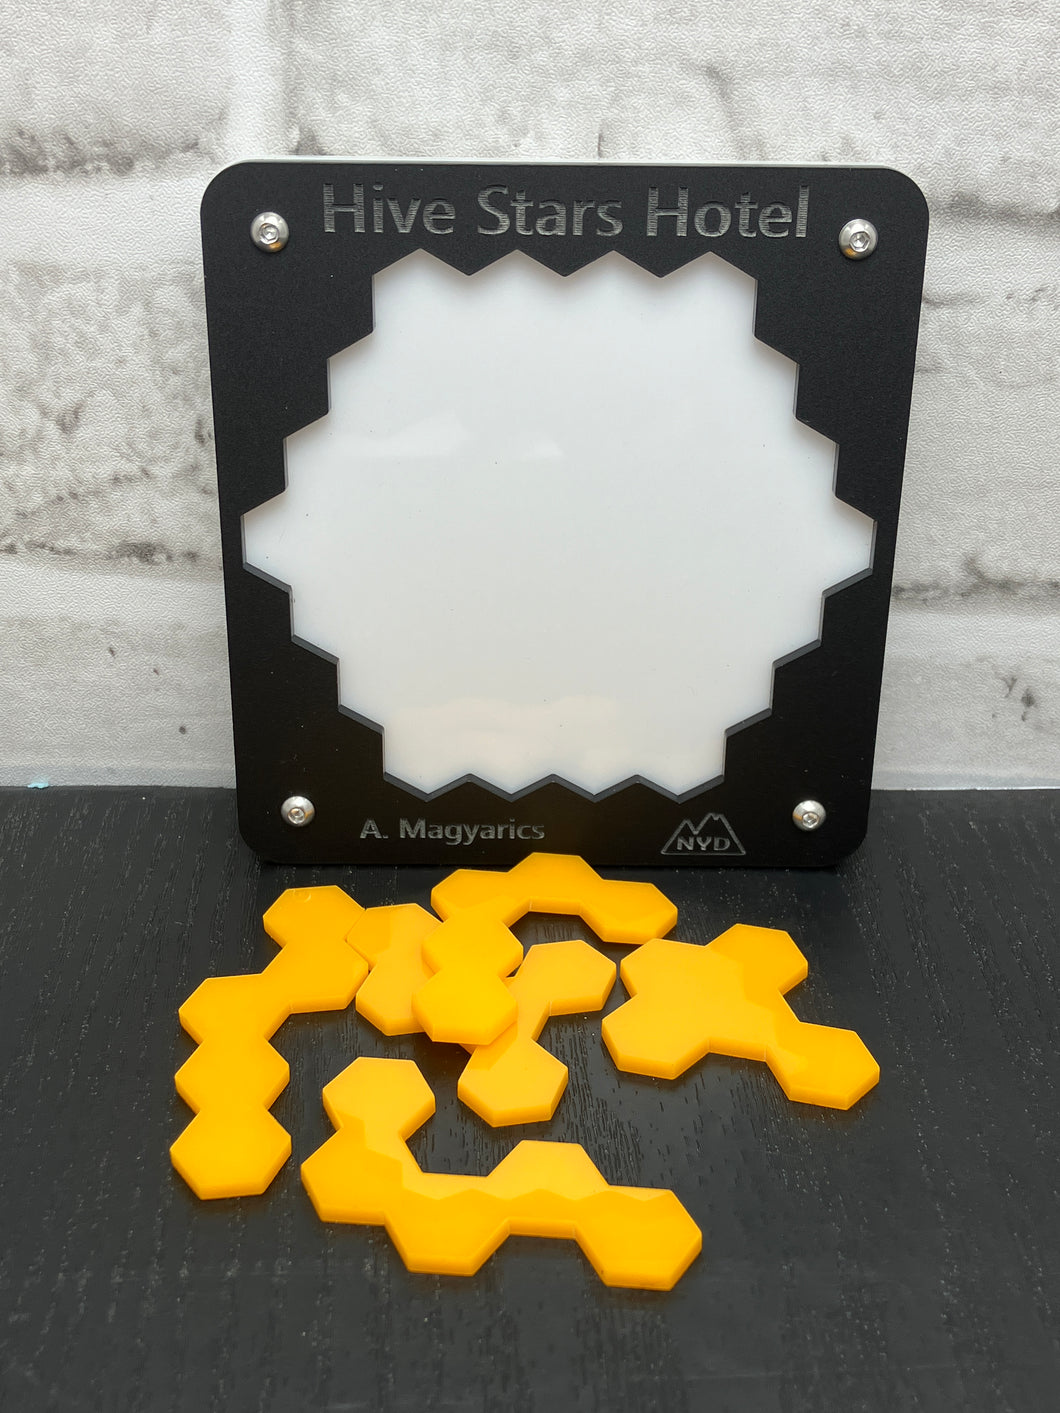 Hive Stars Hotel